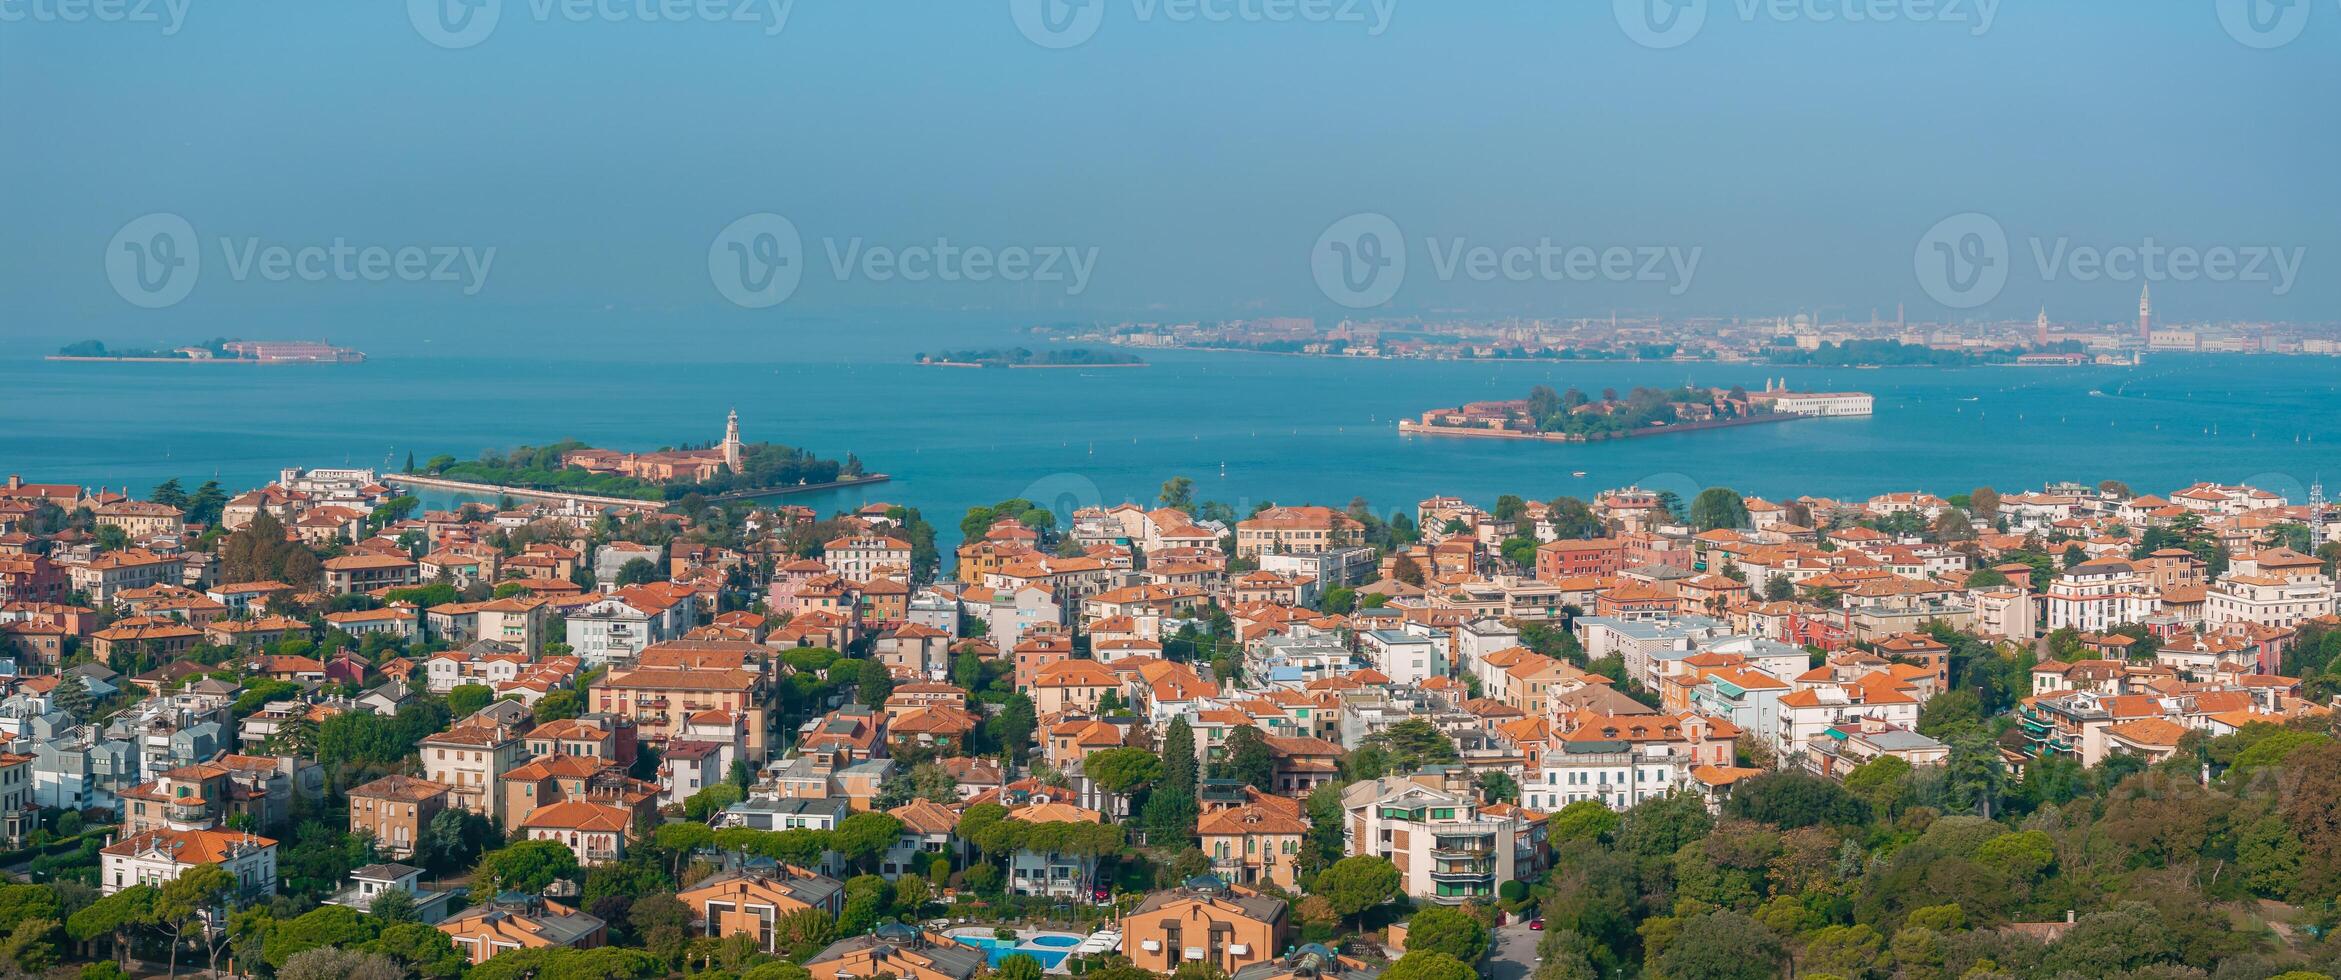 Luftaufnahme der Insel Lido de Venezia in Venedig, Italien. foto